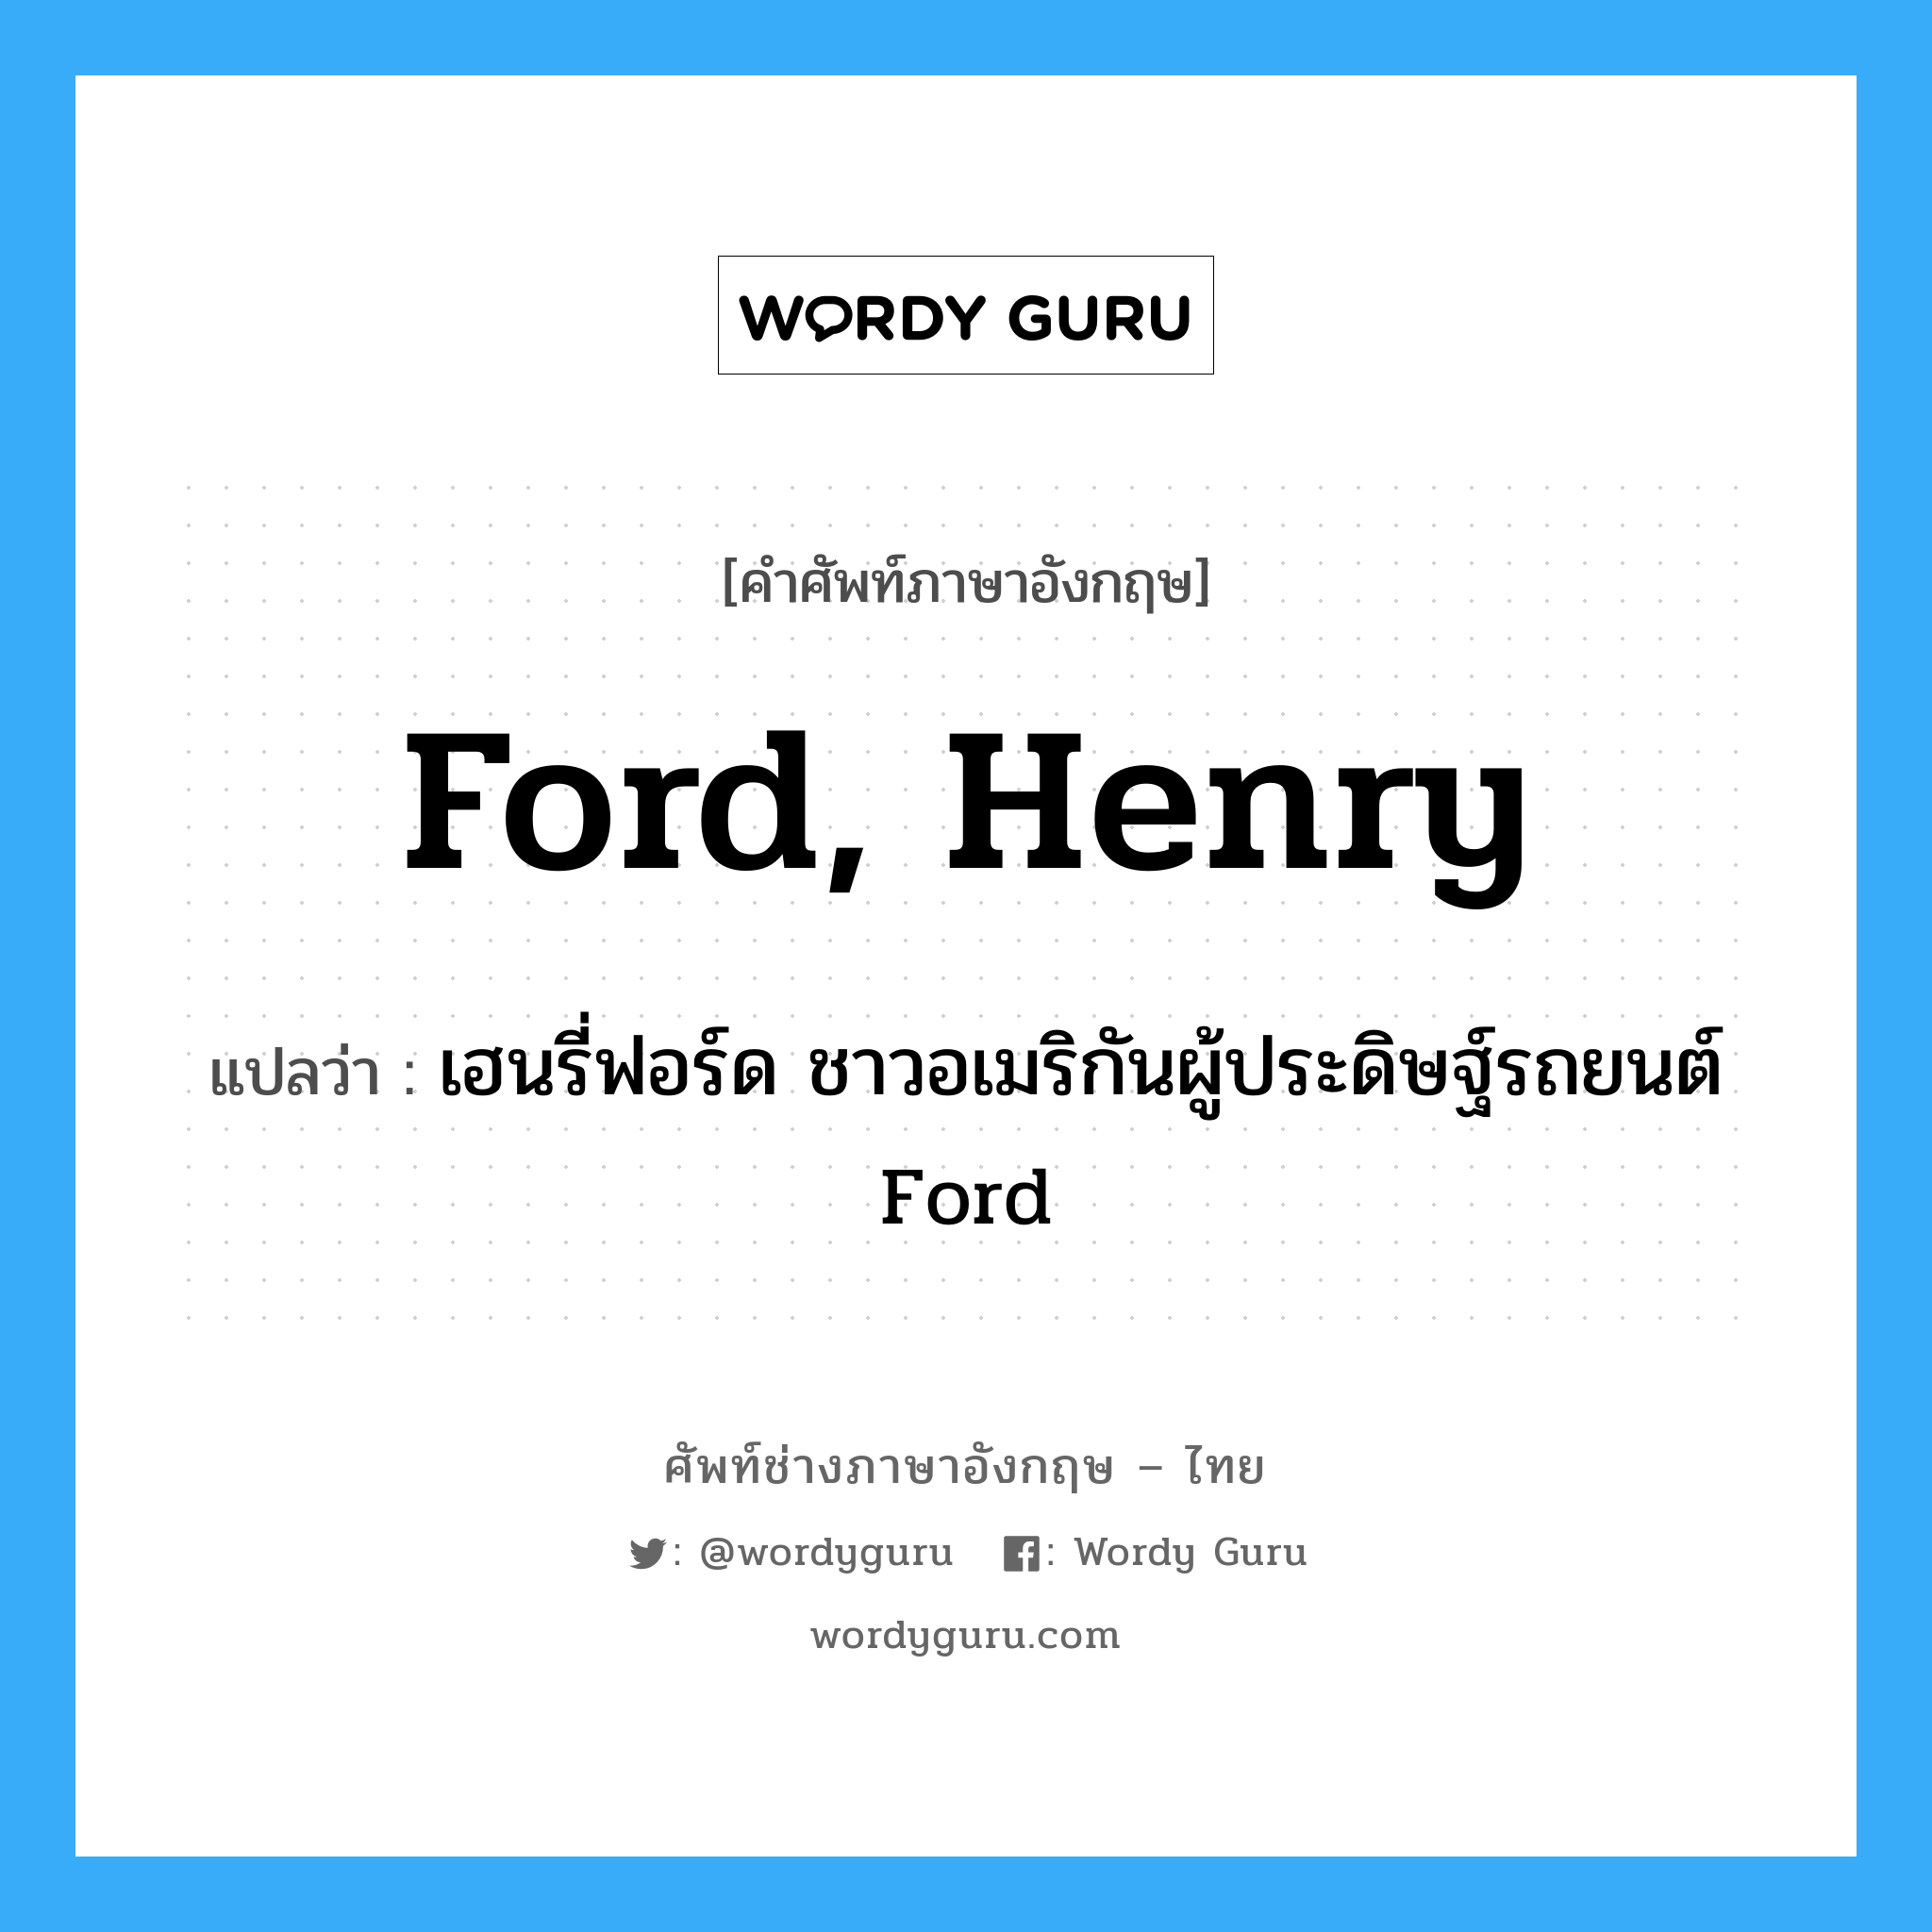 เฮนรี่ฟอร์ด ชาวอเมริกันผู้ประดิษฐ์รถยนต์ Ford ภาษาอังกฤษ?, คำศัพท์ช่างภาษาอังกฤษ - ไทย เฮนรี่ฟอร์ด ชาวอเมริกันผู้ประดิษฐ์รถยนต์ Ford คำศัพท์ภาษาอังกฤษ เฮนรี่ฟอร์ด ชาวอเมริกันผู้ประดิษฐ์รถยนต์ Ford แปลว่า Ford, Henry